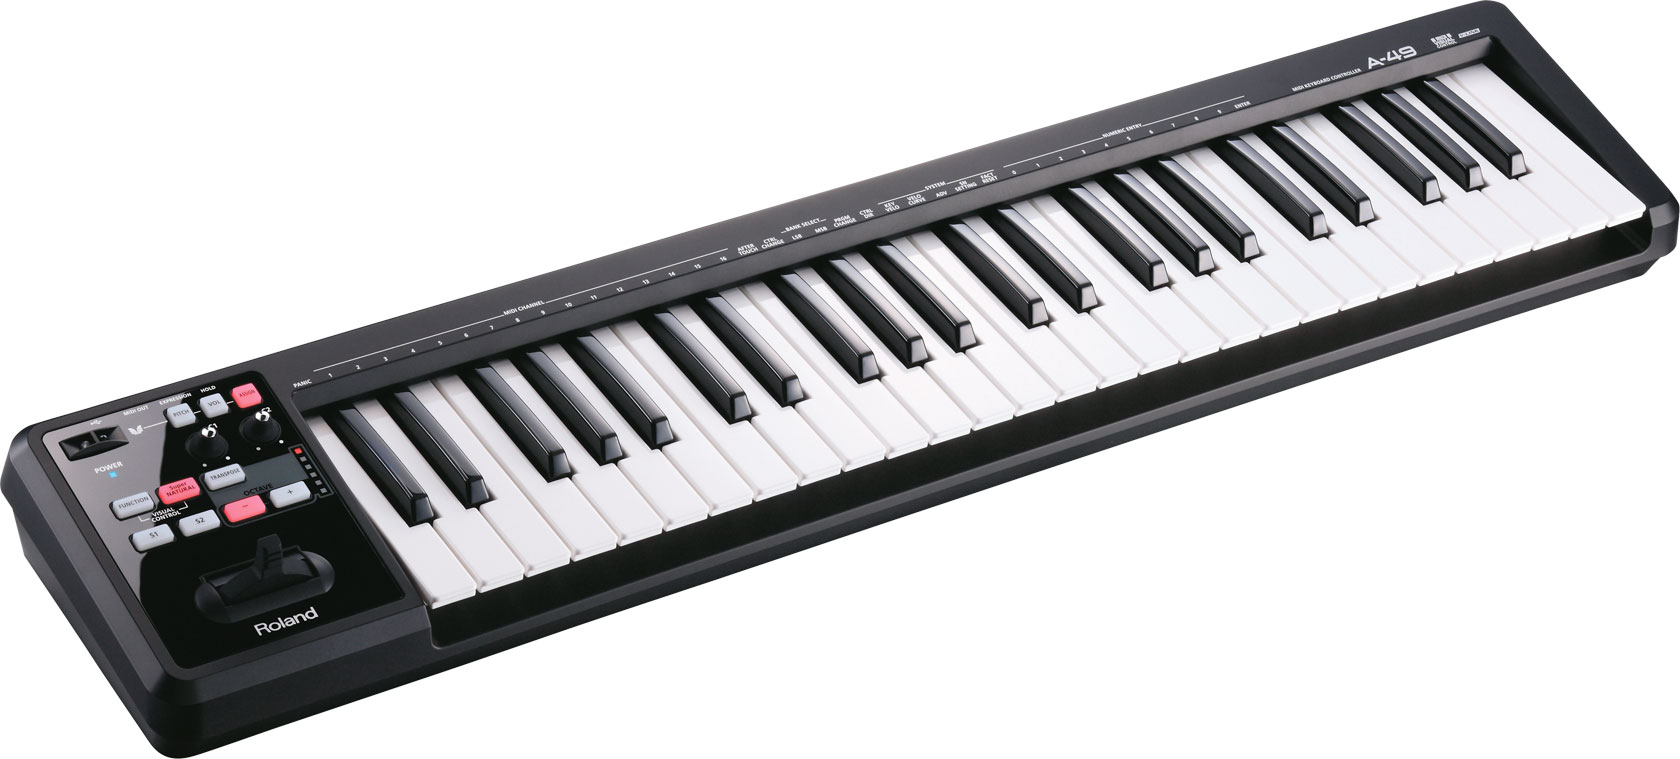 罗兰 Roland A-49 A49 MIDI键盘控制器